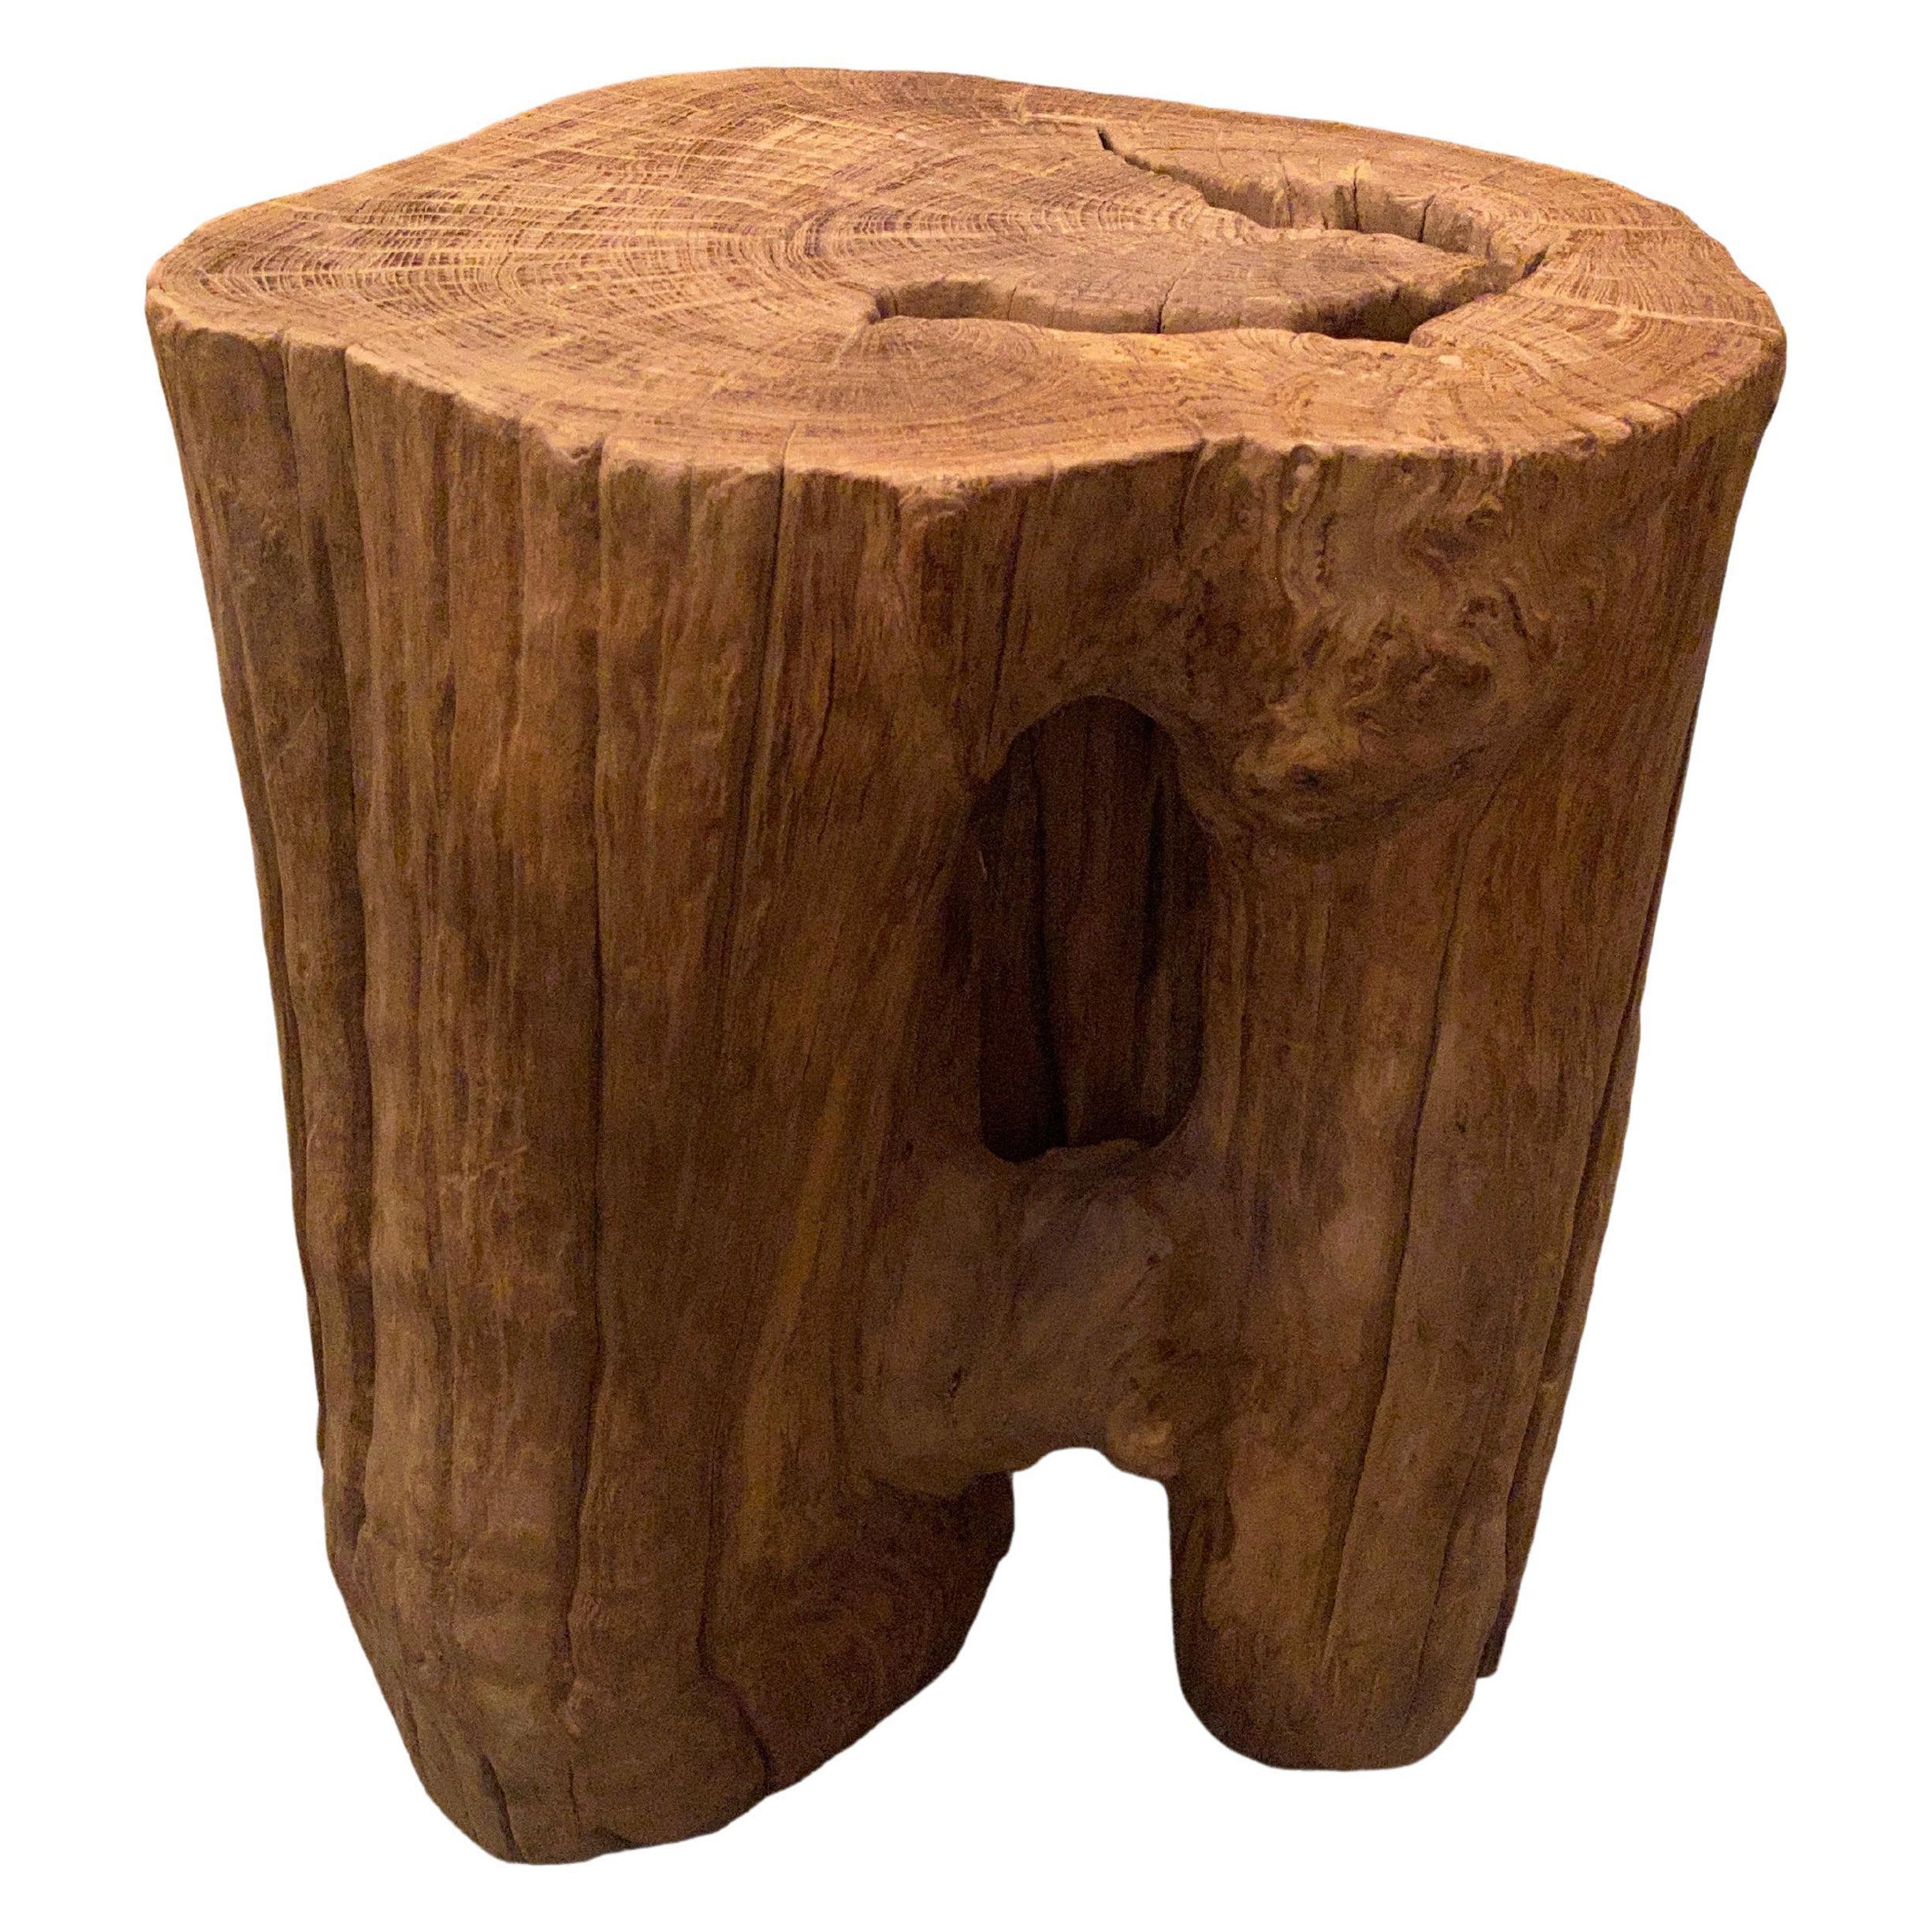 Andrianna Shamaris Organic Teak Wood Side Table or Pedestal